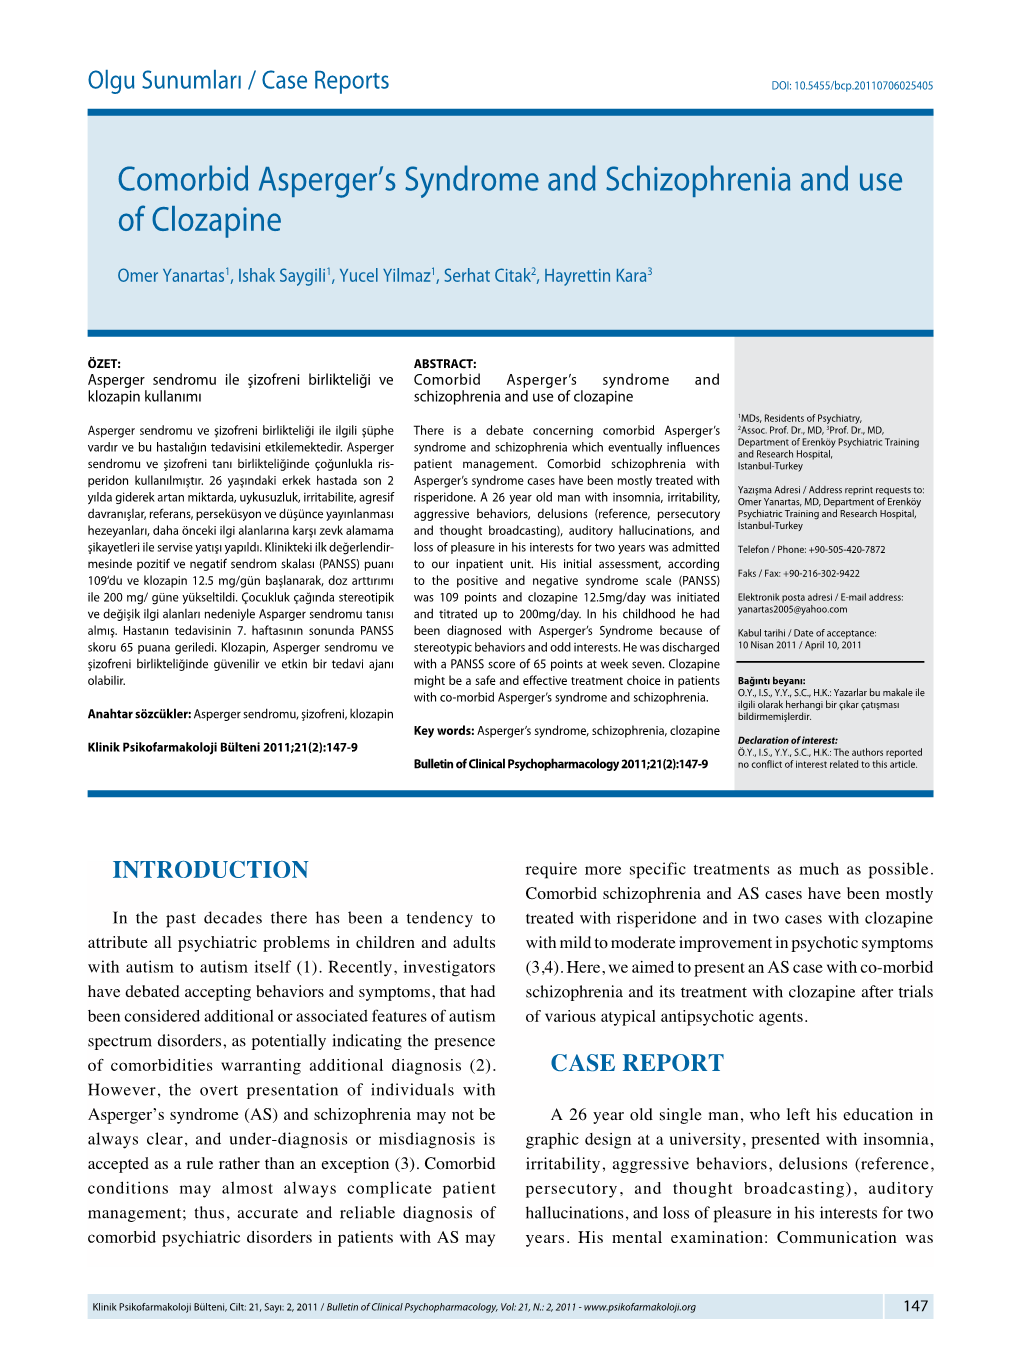 Comorbid Asperger's Syndrome and Schizophrenia and Use of Clozapine